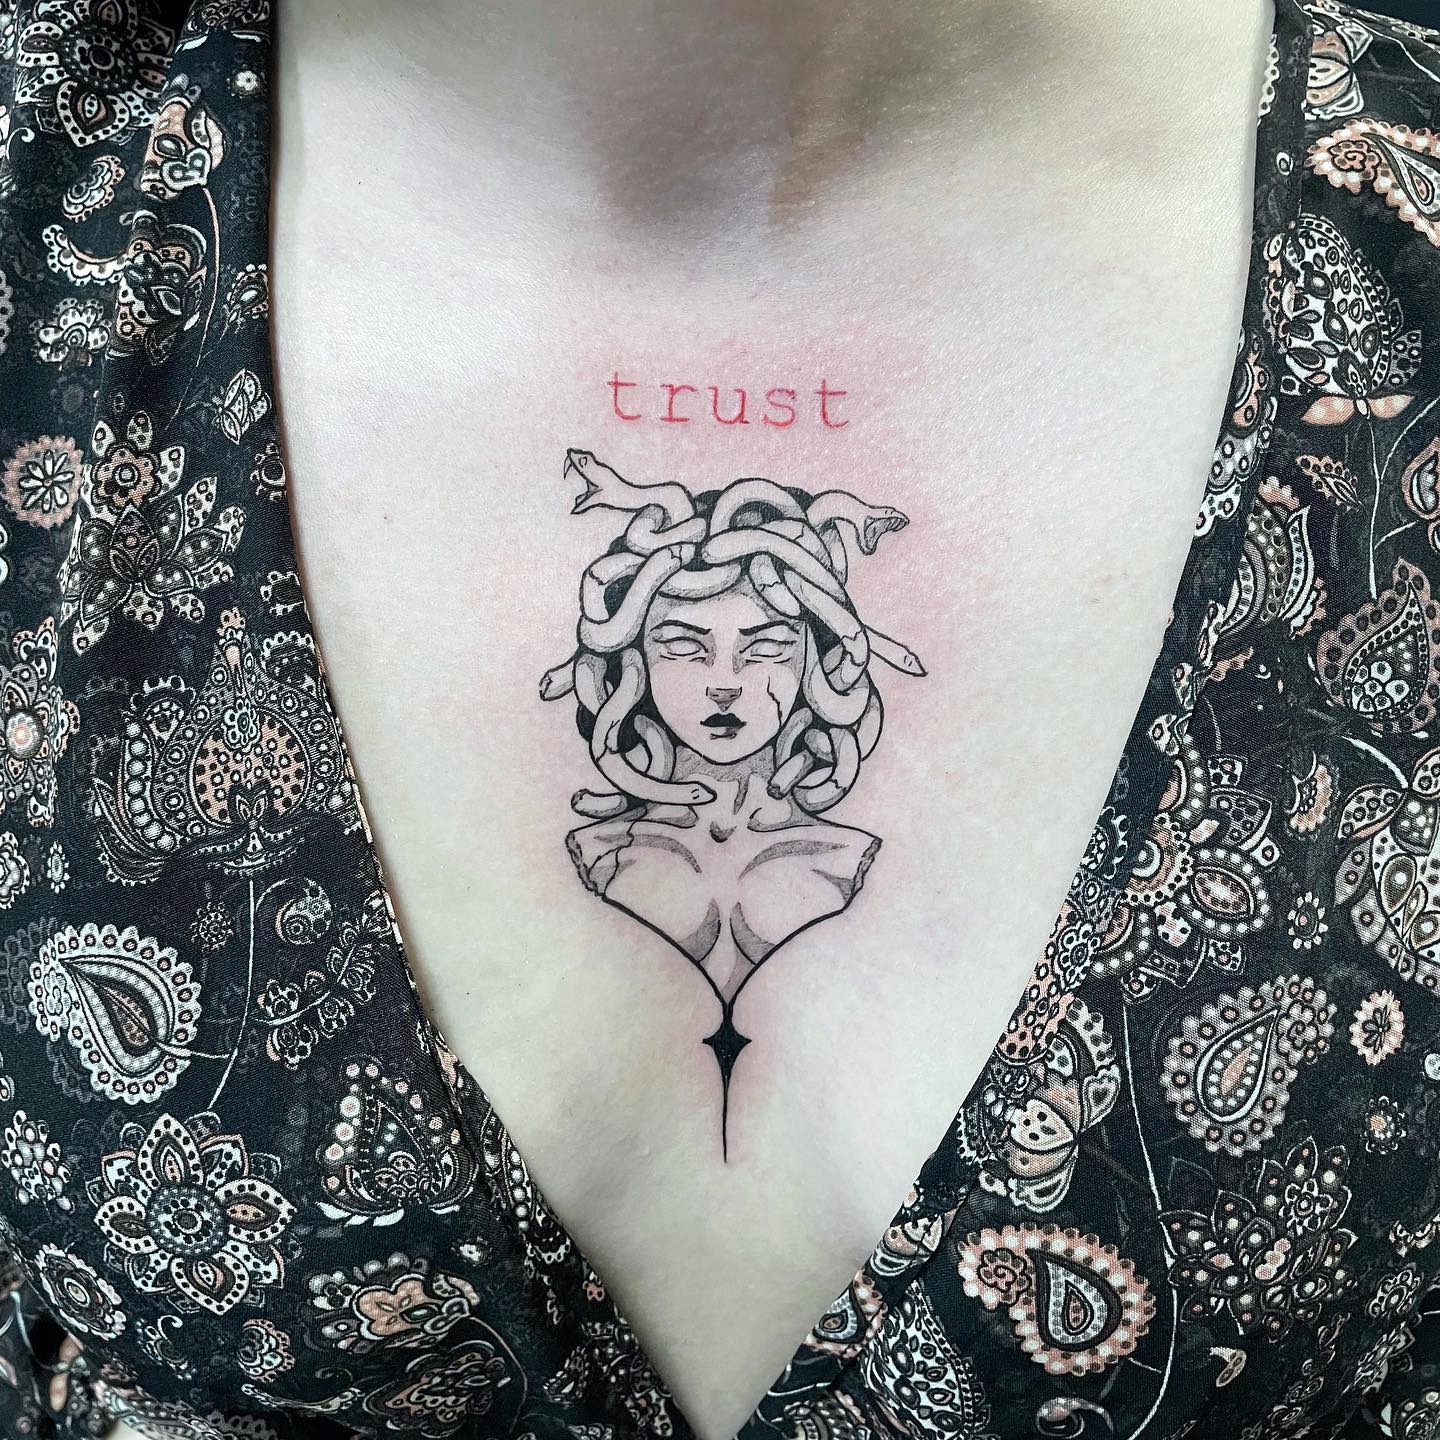 Medusa Chest Tattoo